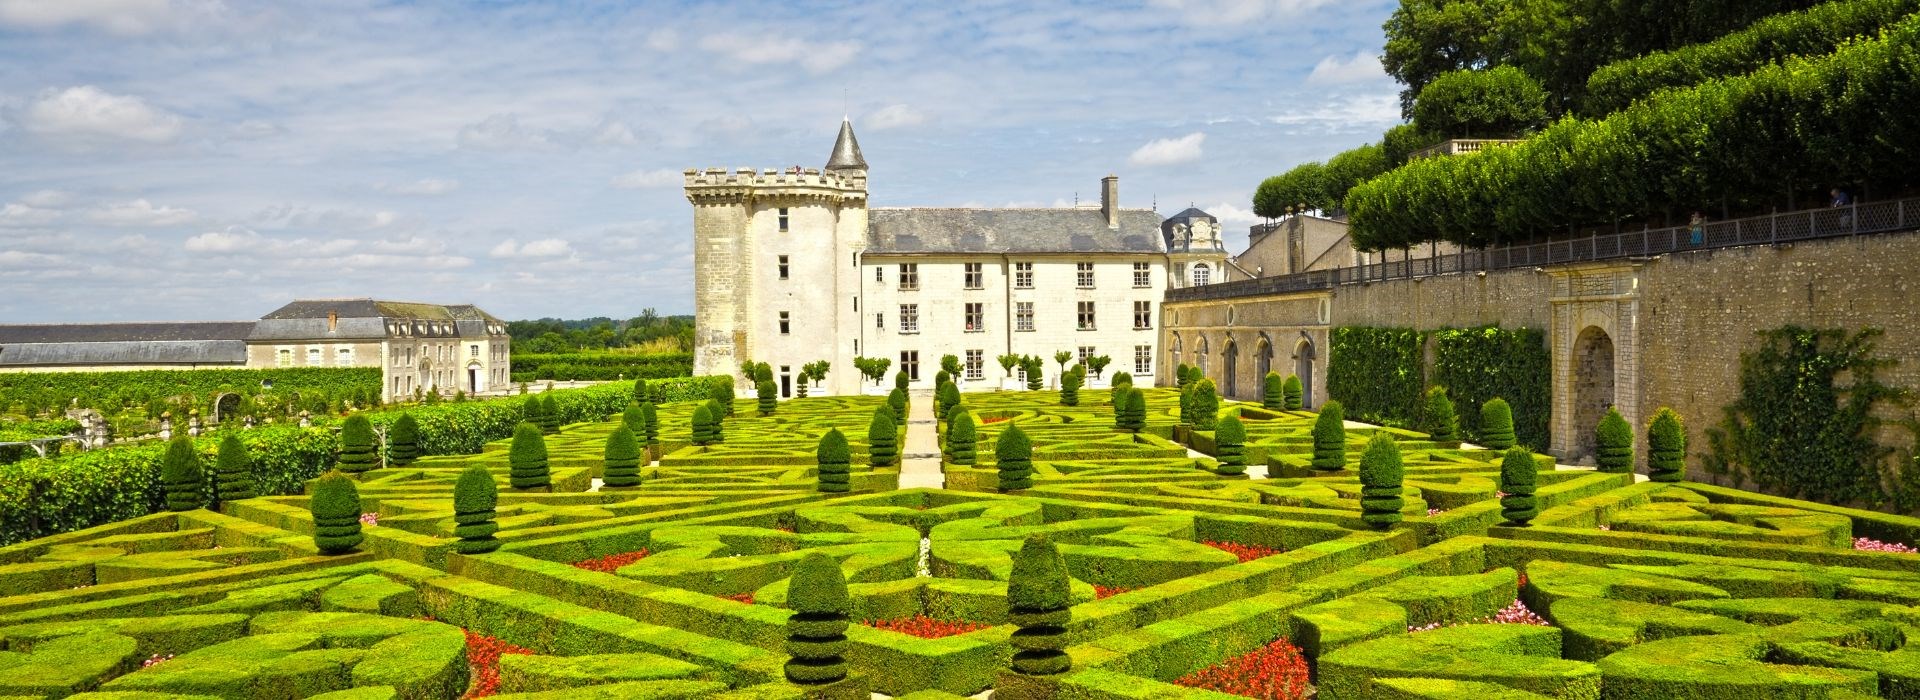 Visiter Les jardins de Villandry - Pays de la Loire